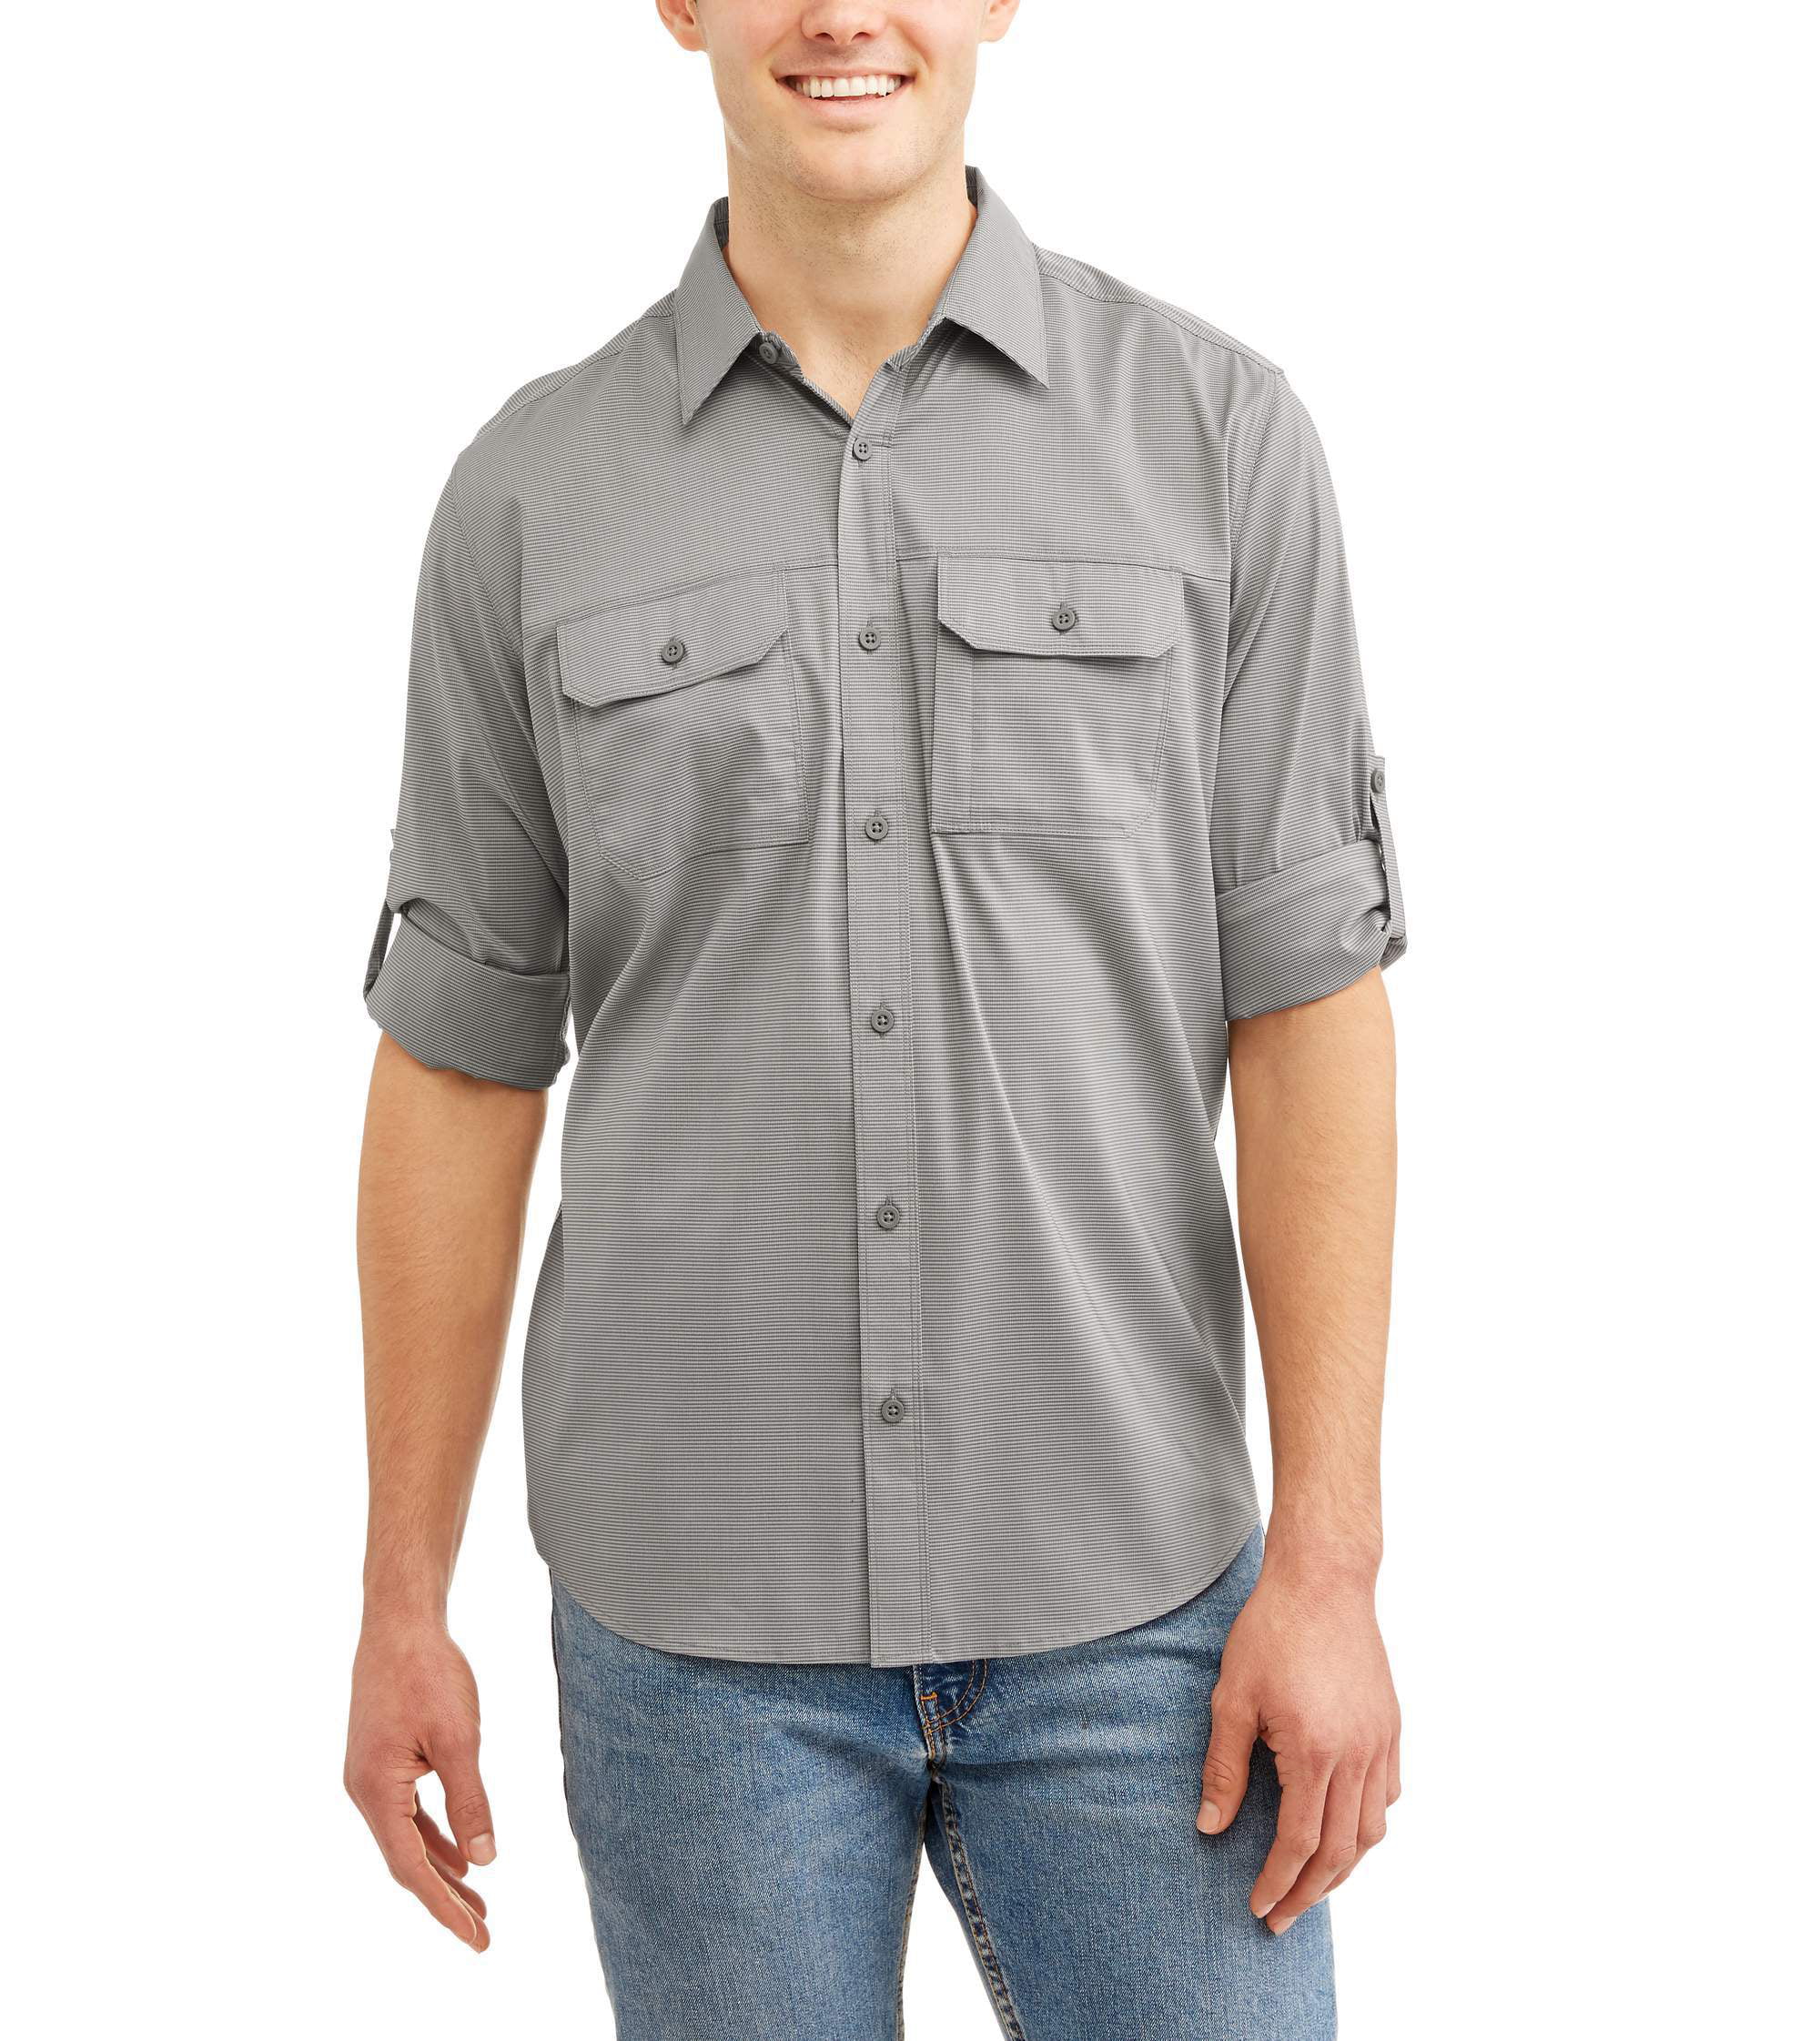 Swiss Tech Big men's long sleeve outdoor woven shirt - Walmart.com